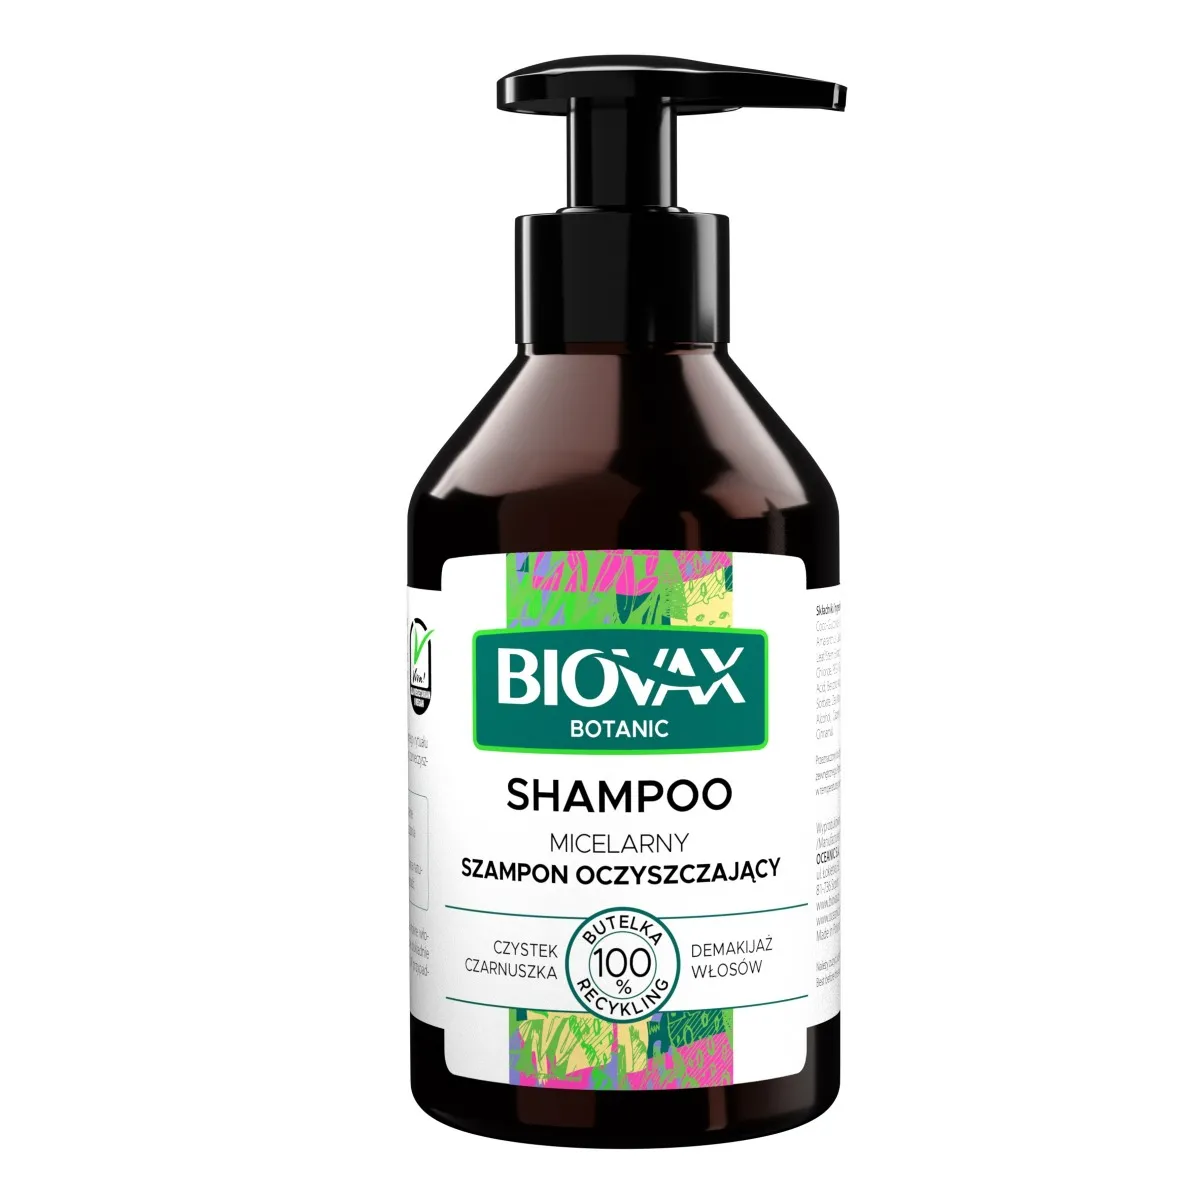 L'Biotica Biovax Botanic, szampon micelarny oczyszczający do włosów, 200 ml